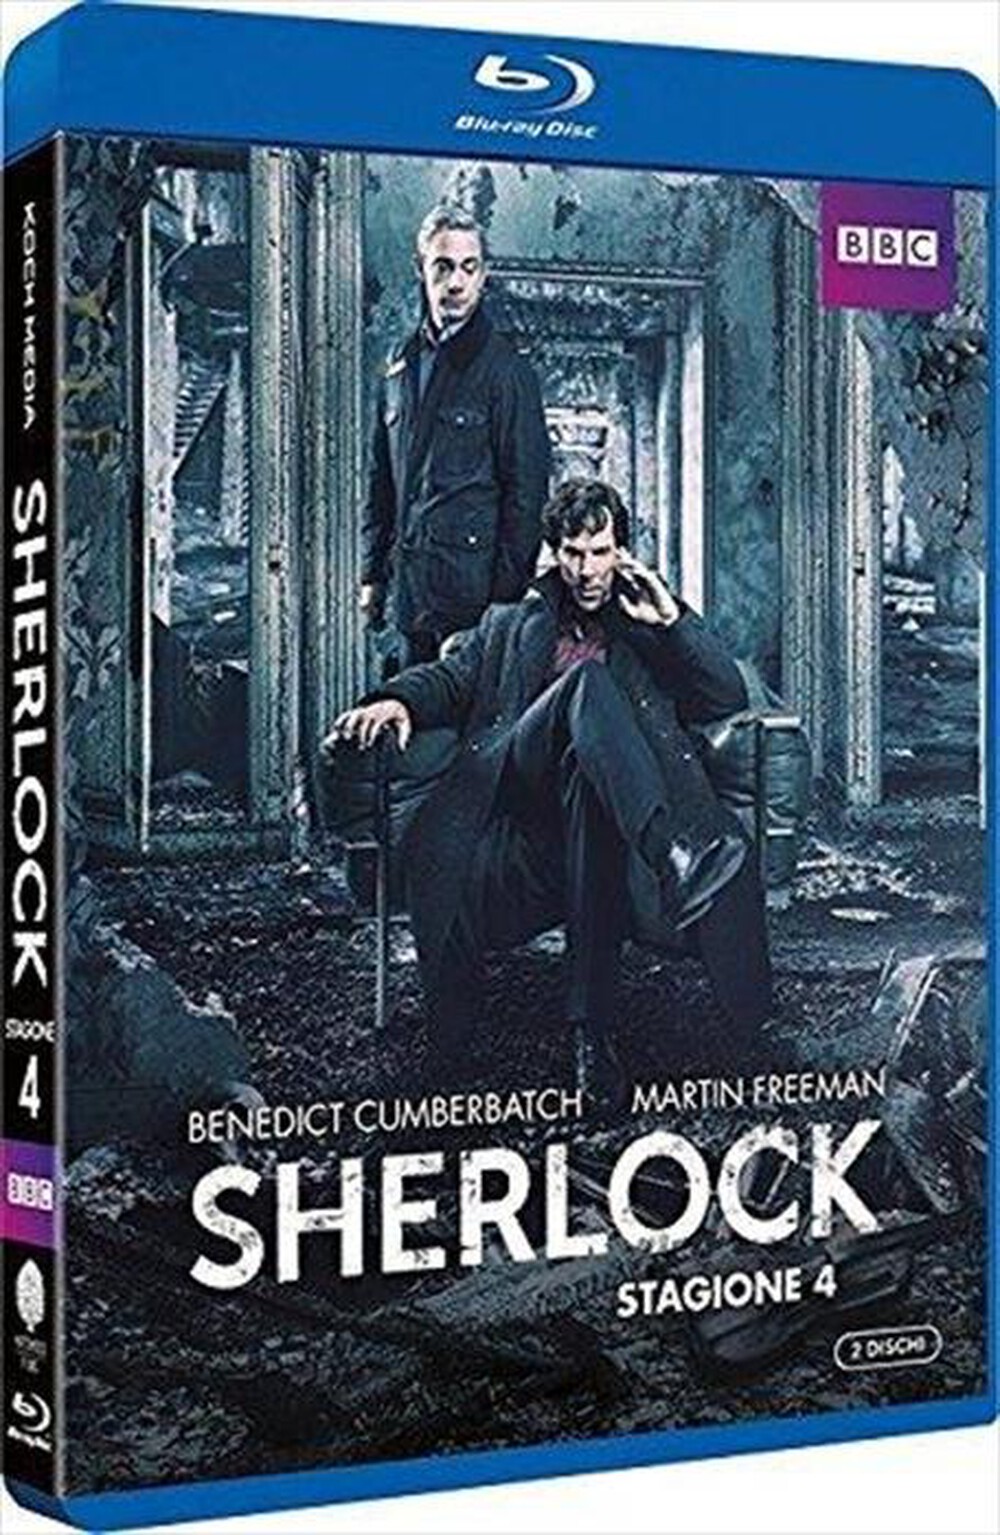 "KOCH MEDIA - Sherlock #04 (2 Blu-Ray) - "